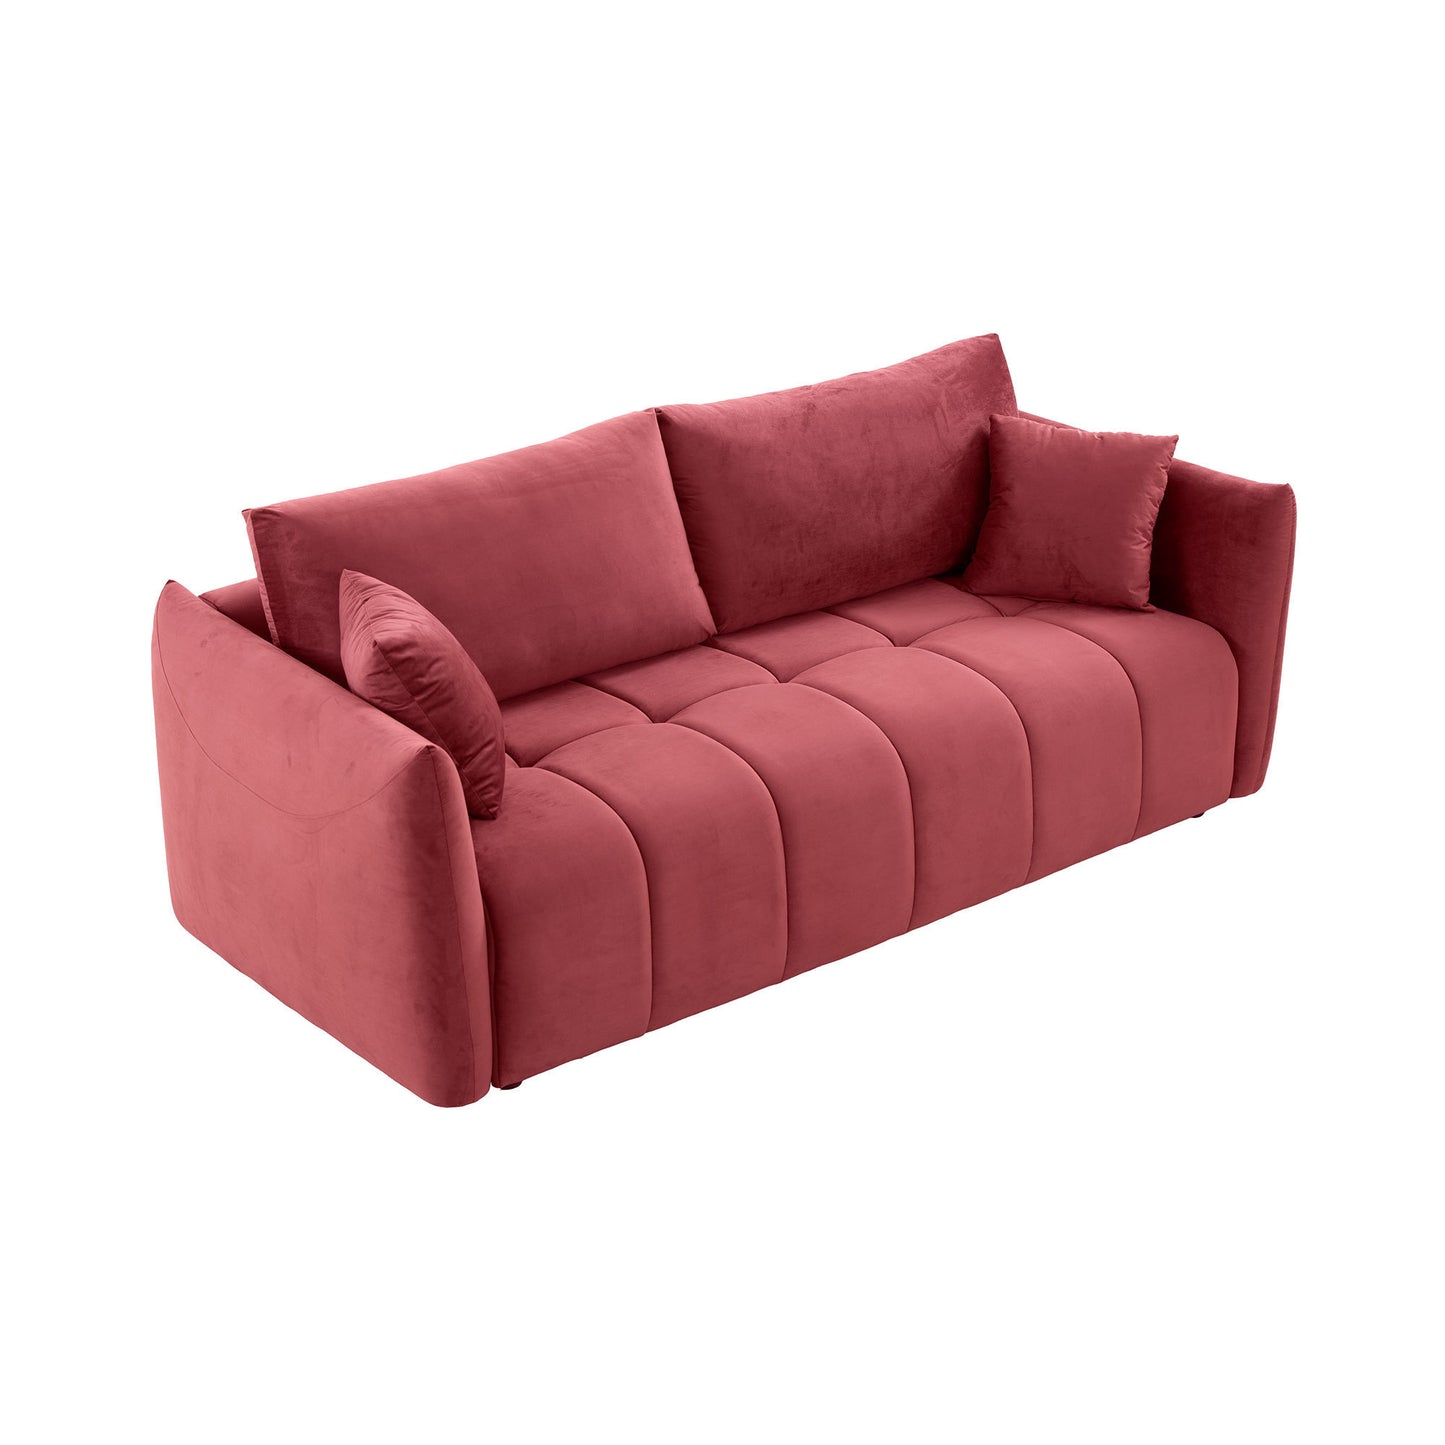 Modern Channel Tufted Wine Red Velvet Sofa